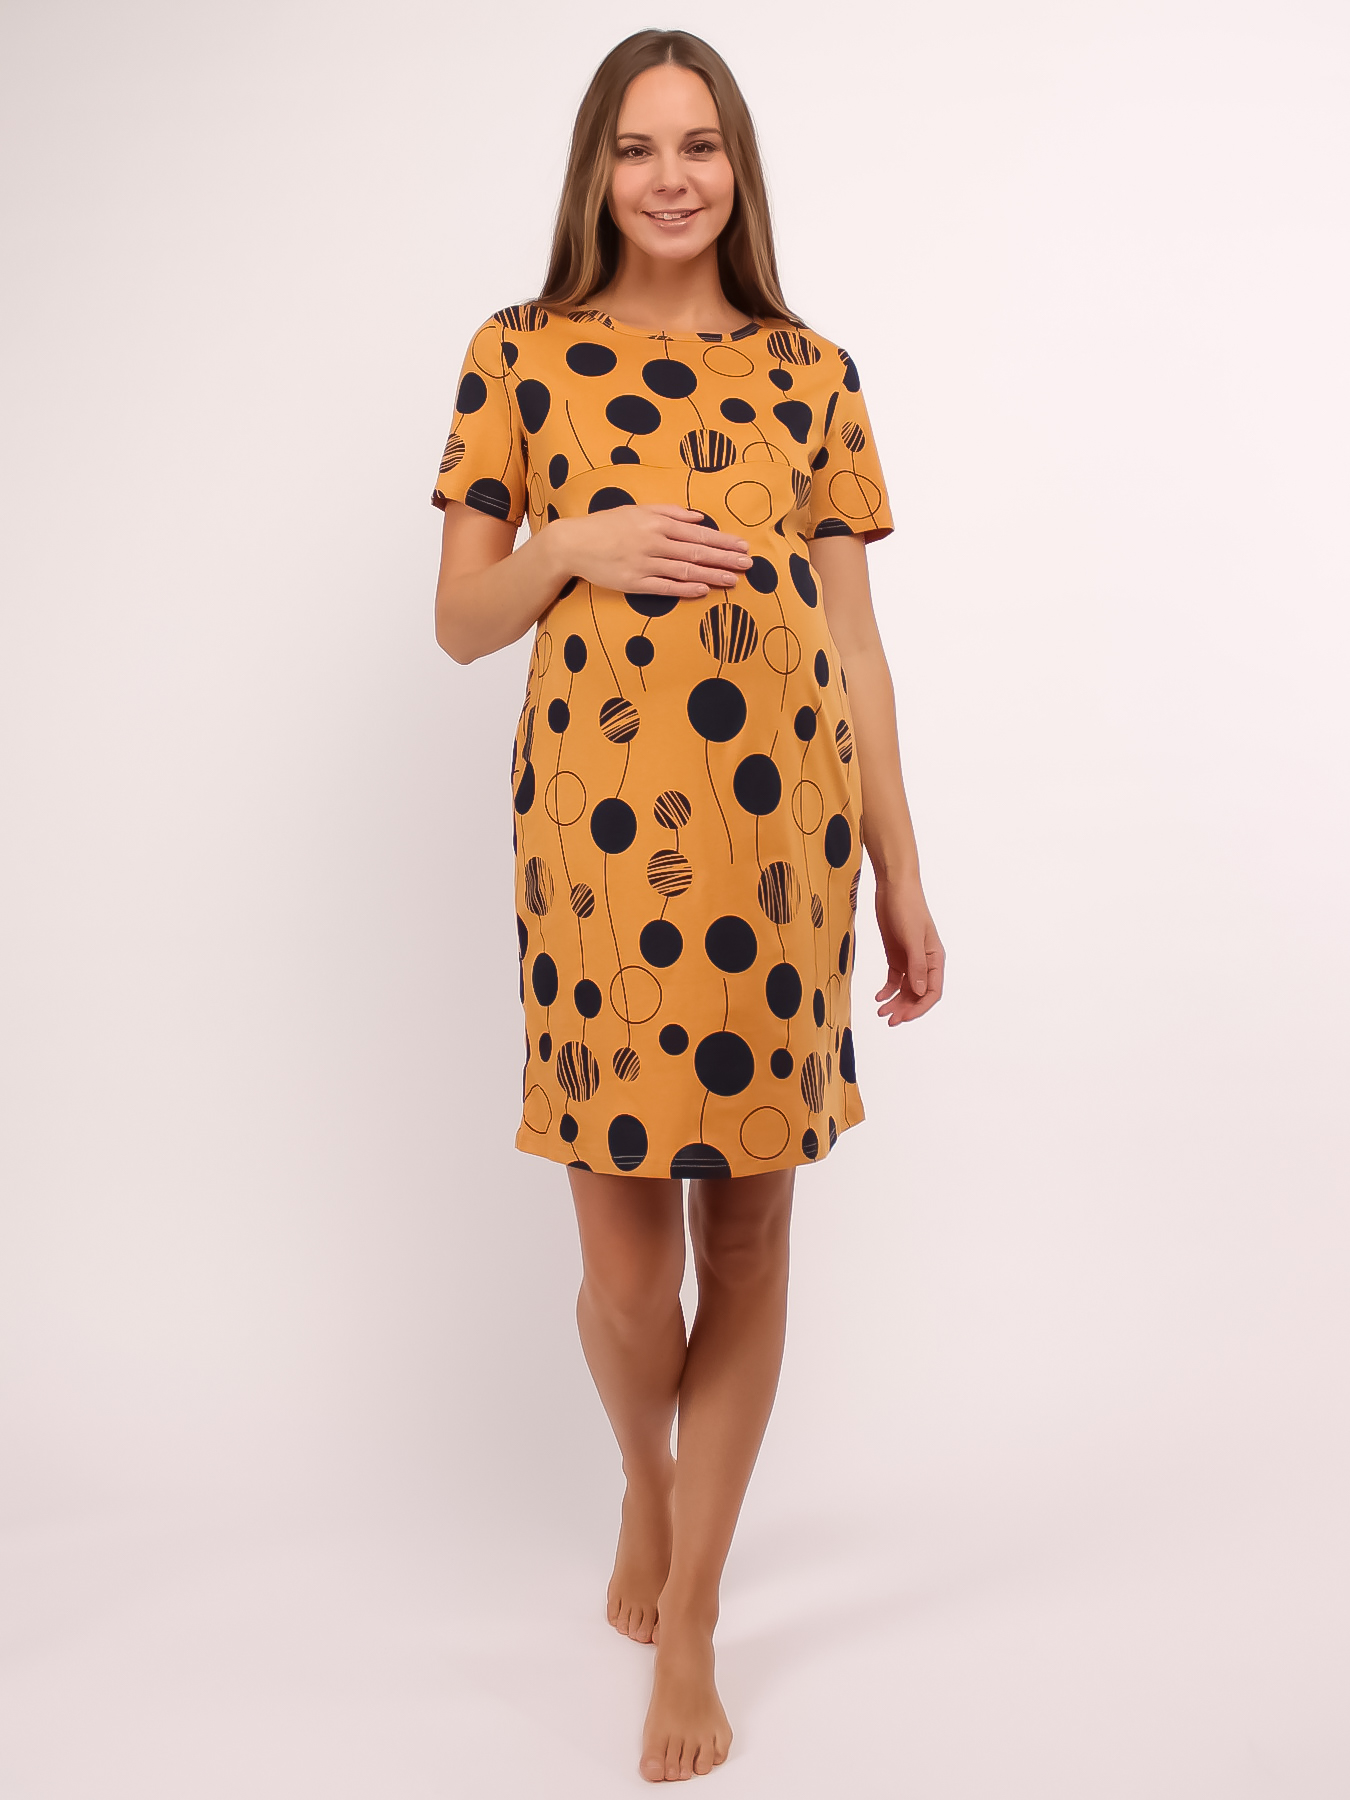 Сорочка для беременных и кормящих (домашнее платье) арт. 355070 горчица